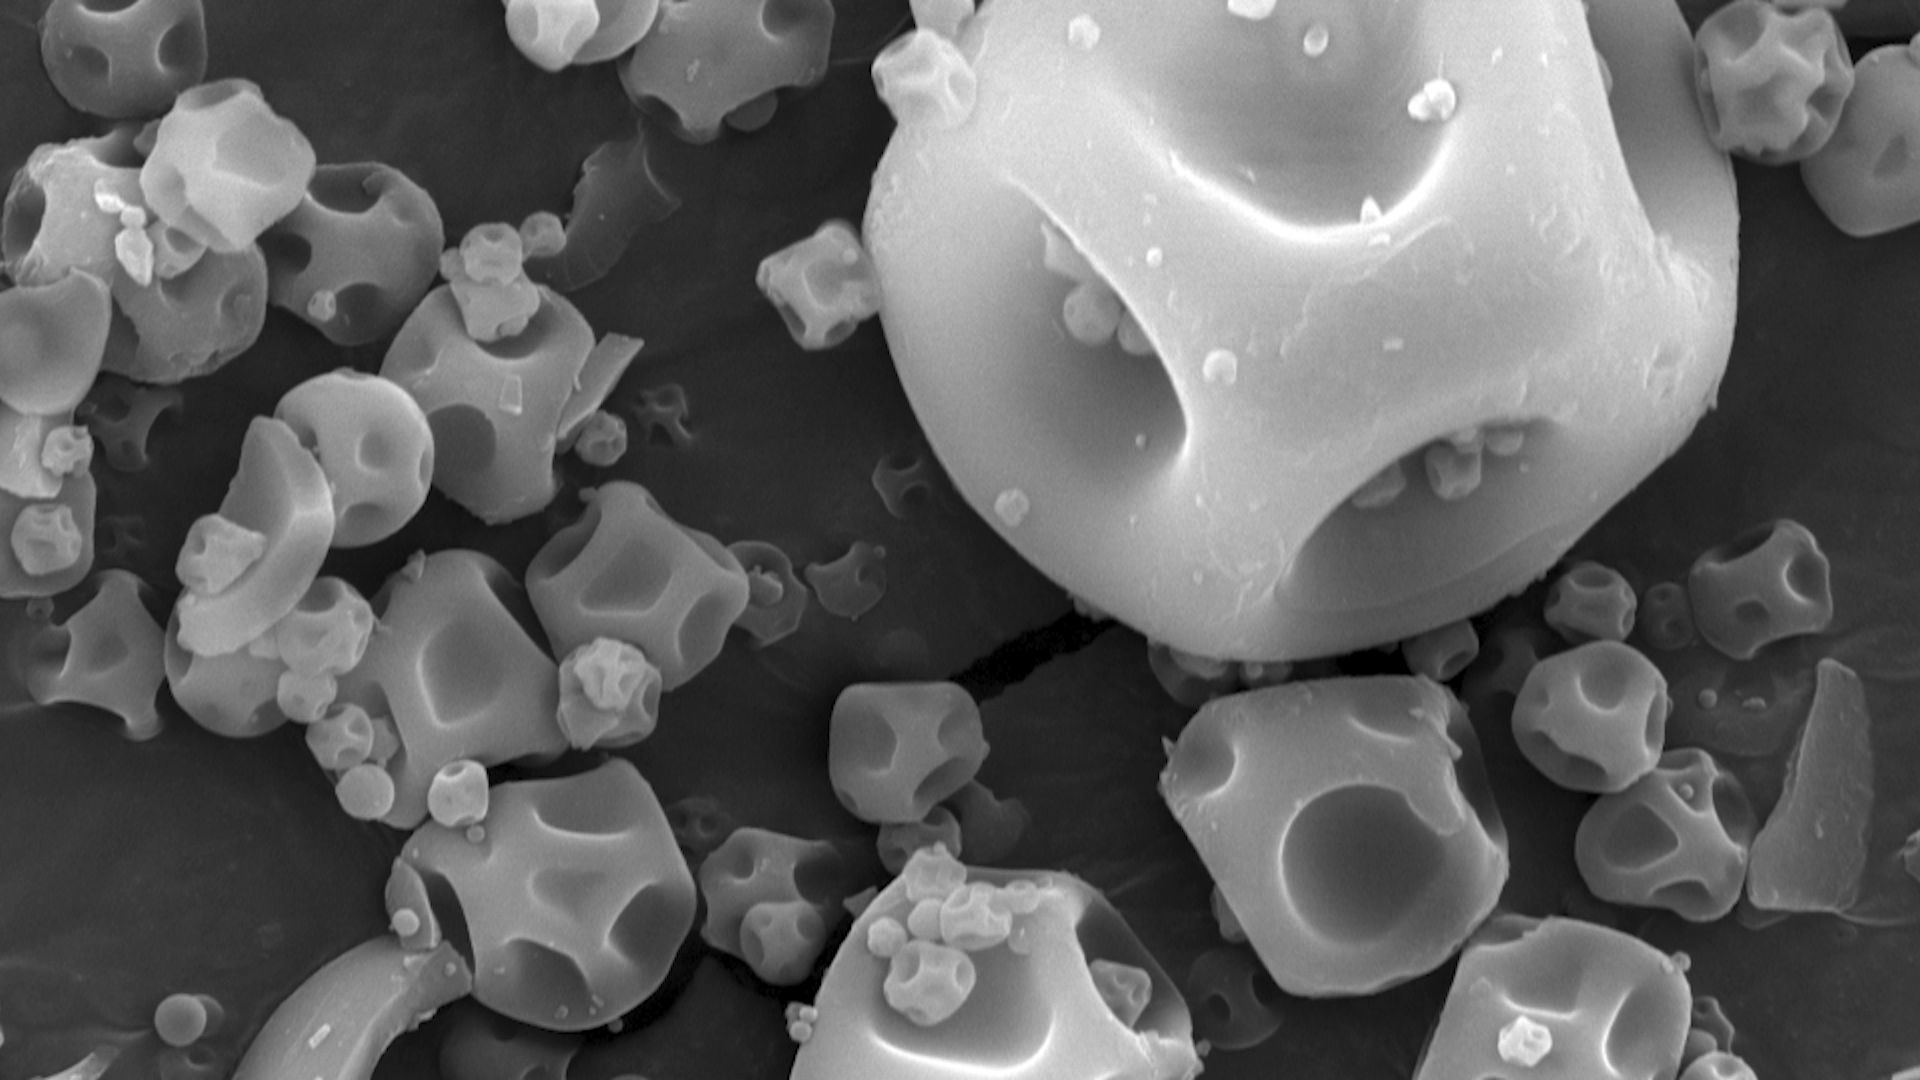 L’observation au microscope permet de voir les aspérités à la surface des molécules. Un peu comme des micros balles de golf qui permettent de se déplacer plus facilement dans l’air.